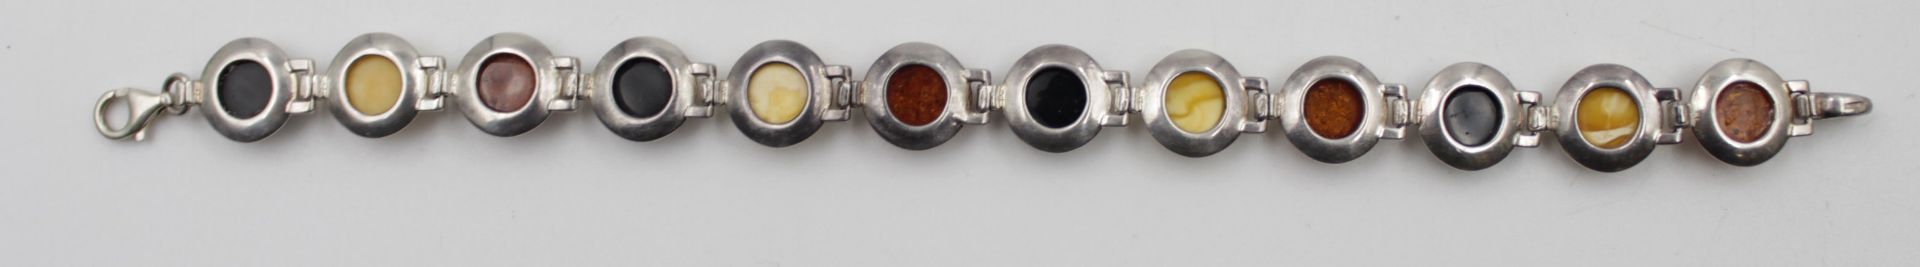 925er Silber-Armband mit Bernsteinbesatz, zus. 20,7gr., L-20,5cm. - Bild 3 aus 5